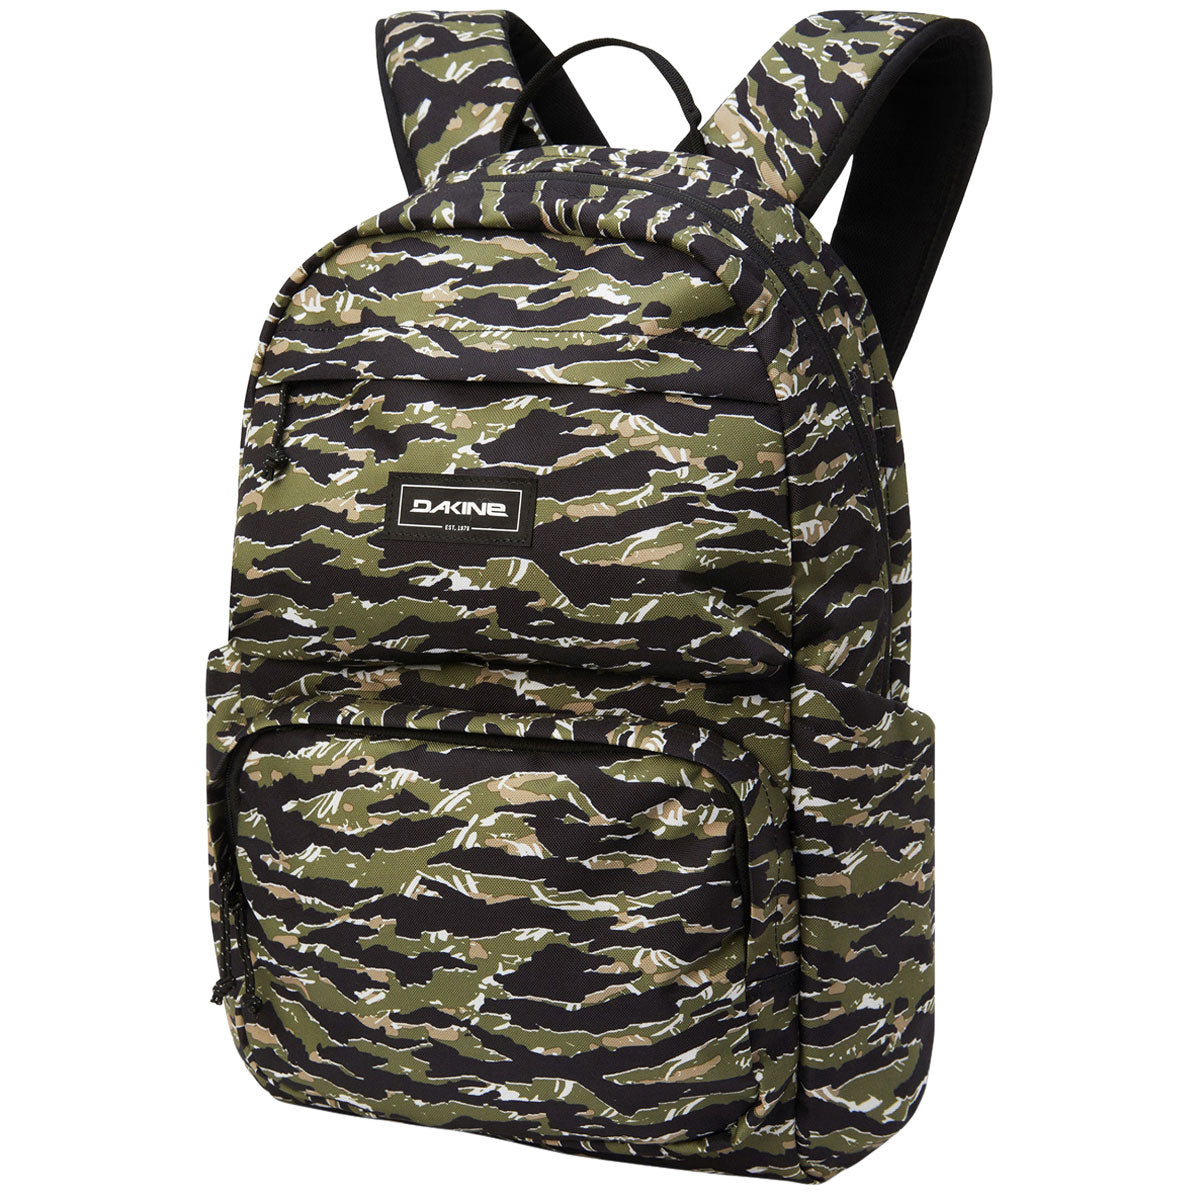 Dakine Method 25L Backpack - Tiger Camo image 1